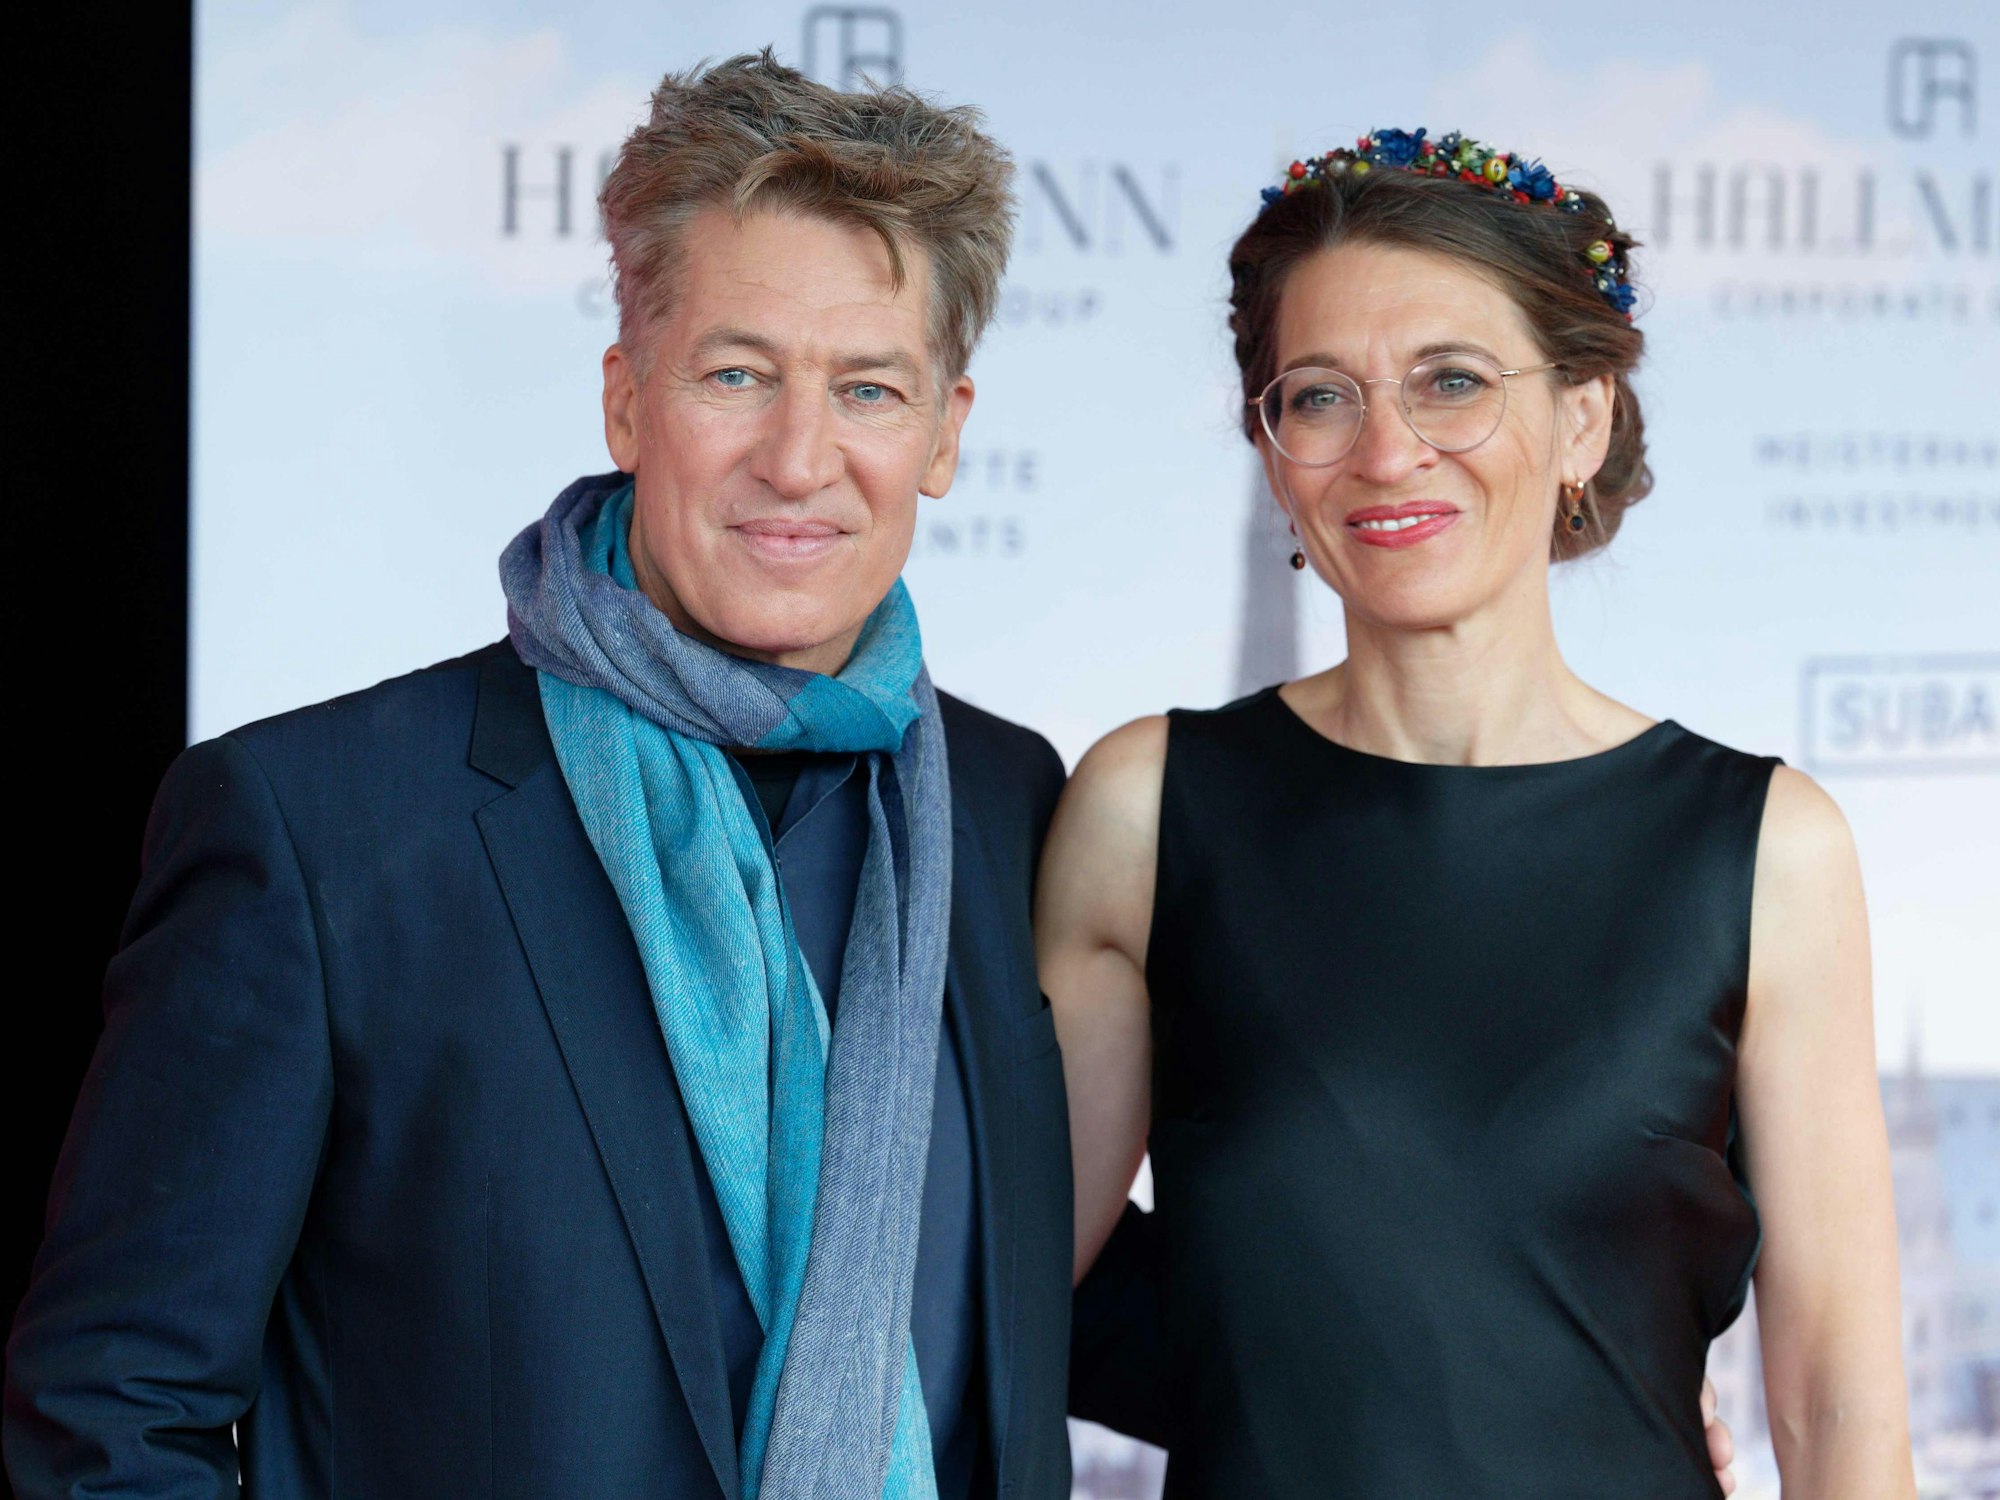 Der Schauspieler Tobias Moretti und seine Frau Julia Moretti kommen zur Verleihung der Europäischen Kulturpreise.